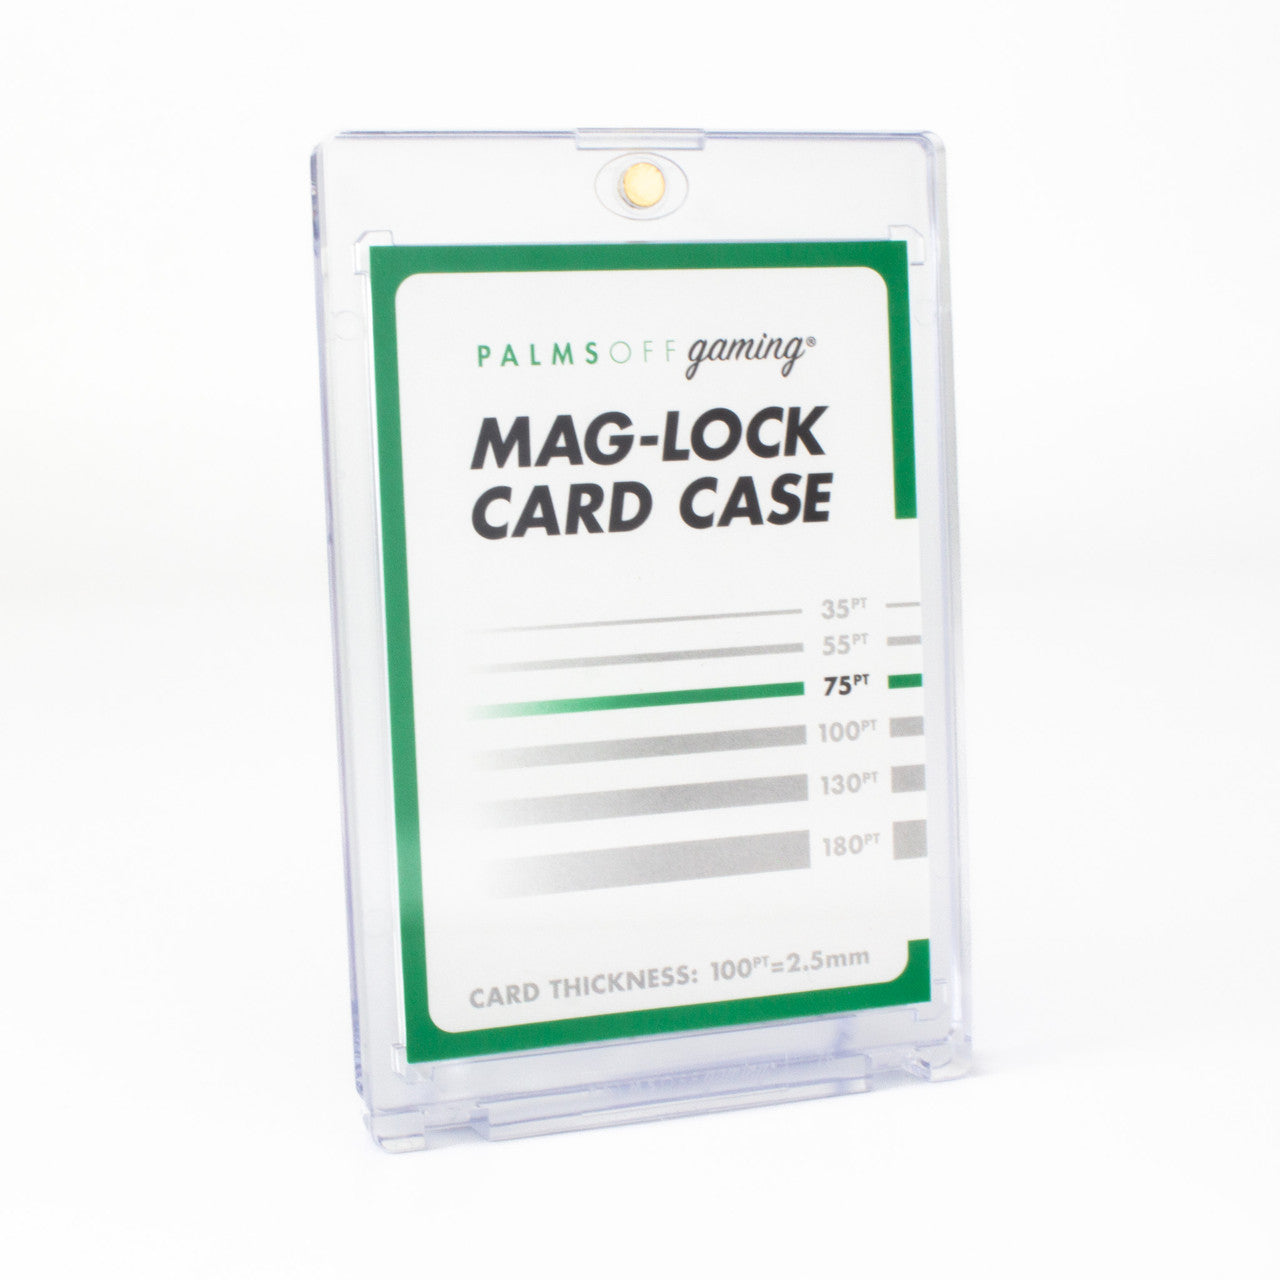 75pt Mag-Lock Card Case